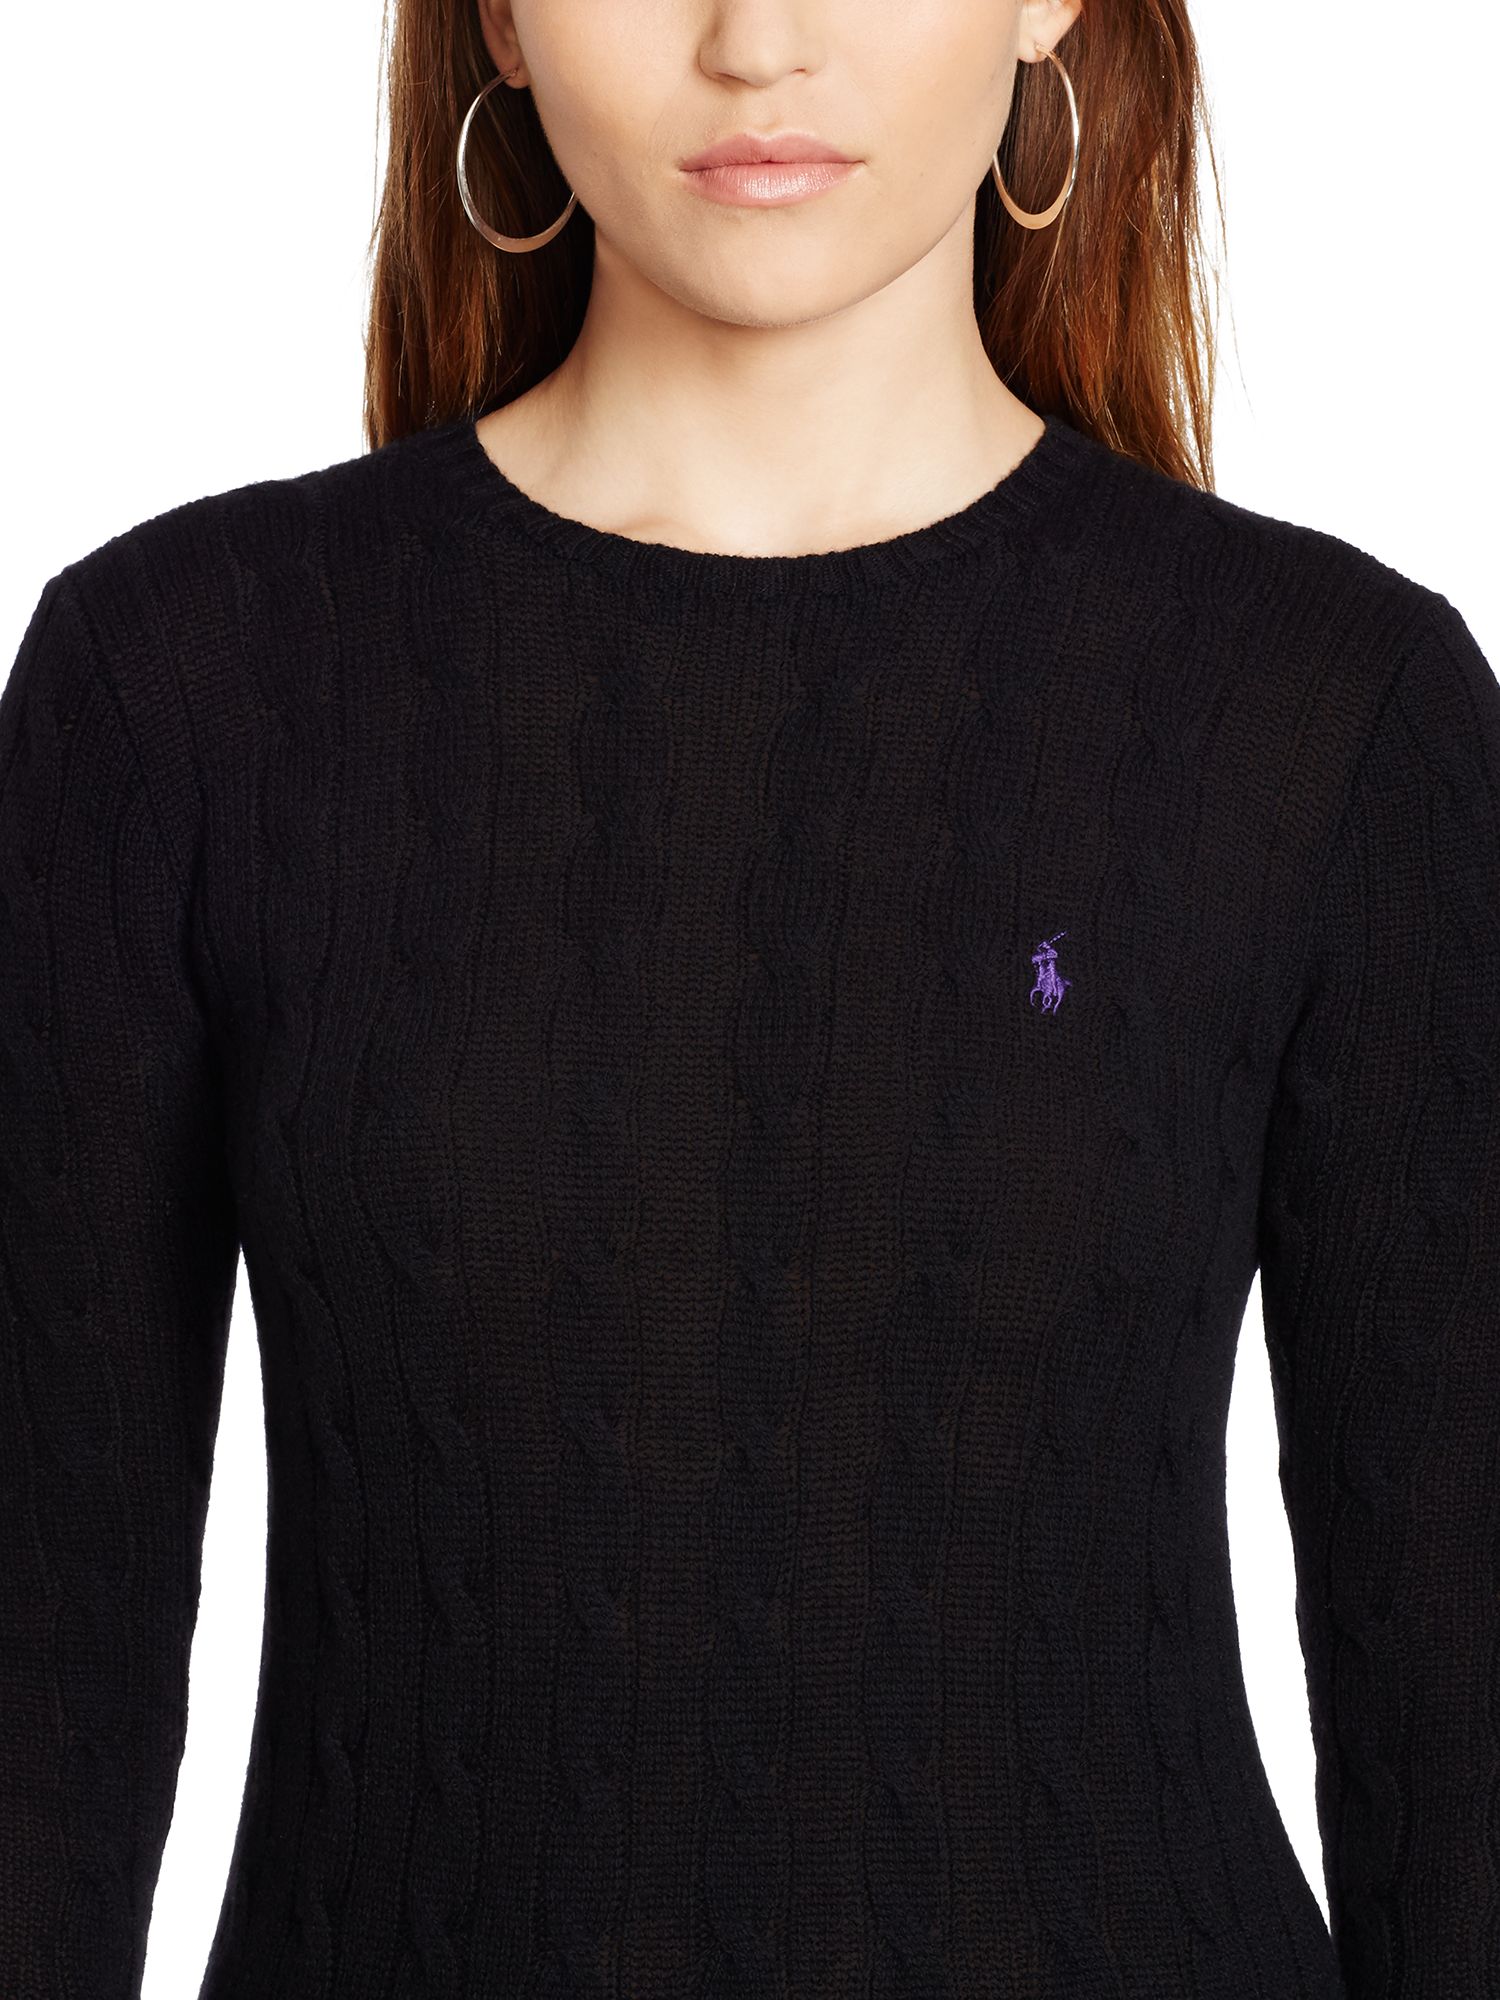 ralph lauren black knitted jumper